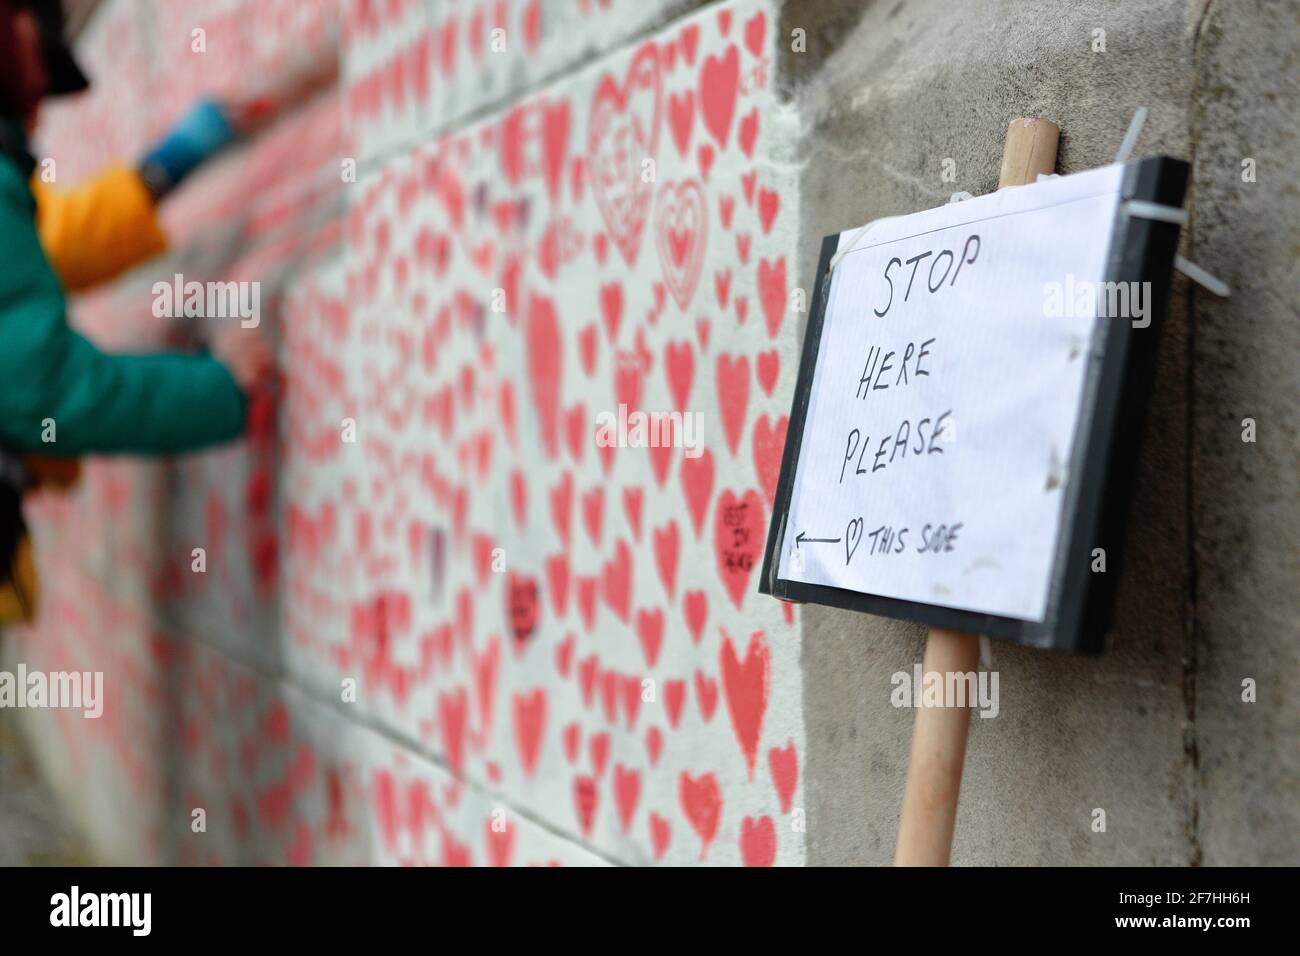 LONDRA (UK), 2021 aprile: Il muro commemorativo per le vittime del coronavirus che si affaccia verso le Camere del Parlamento. Foto Stock